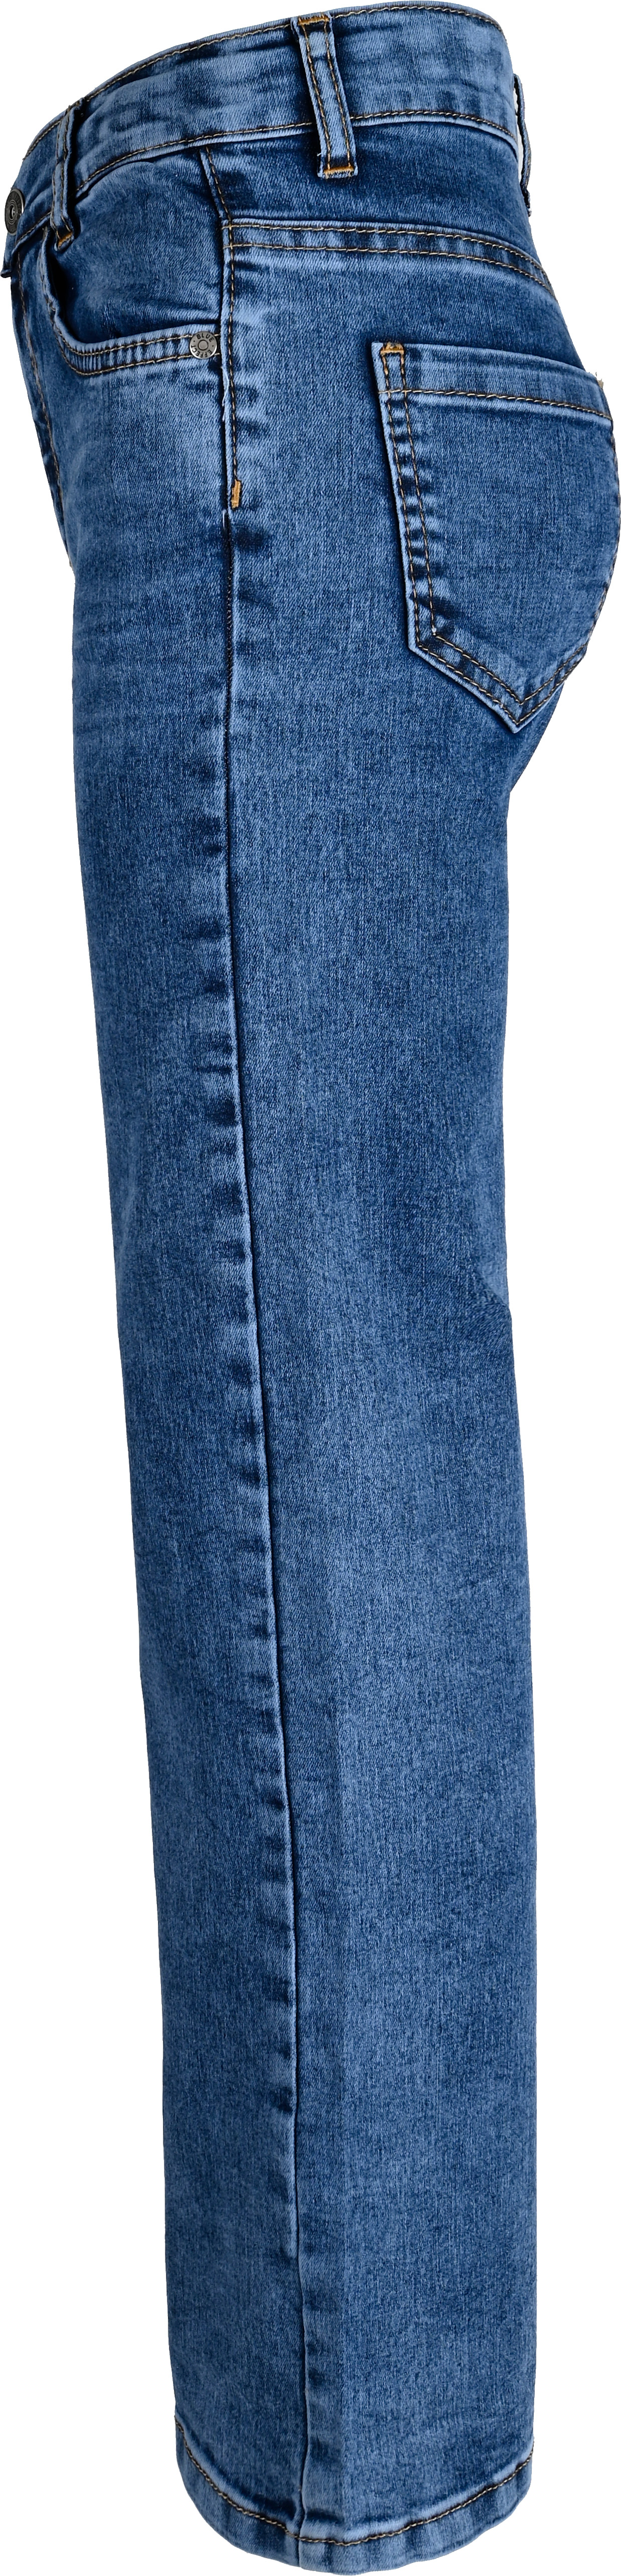 1304-NOS Girls Wide Leg Jeans verfügbar in Slim,Normal